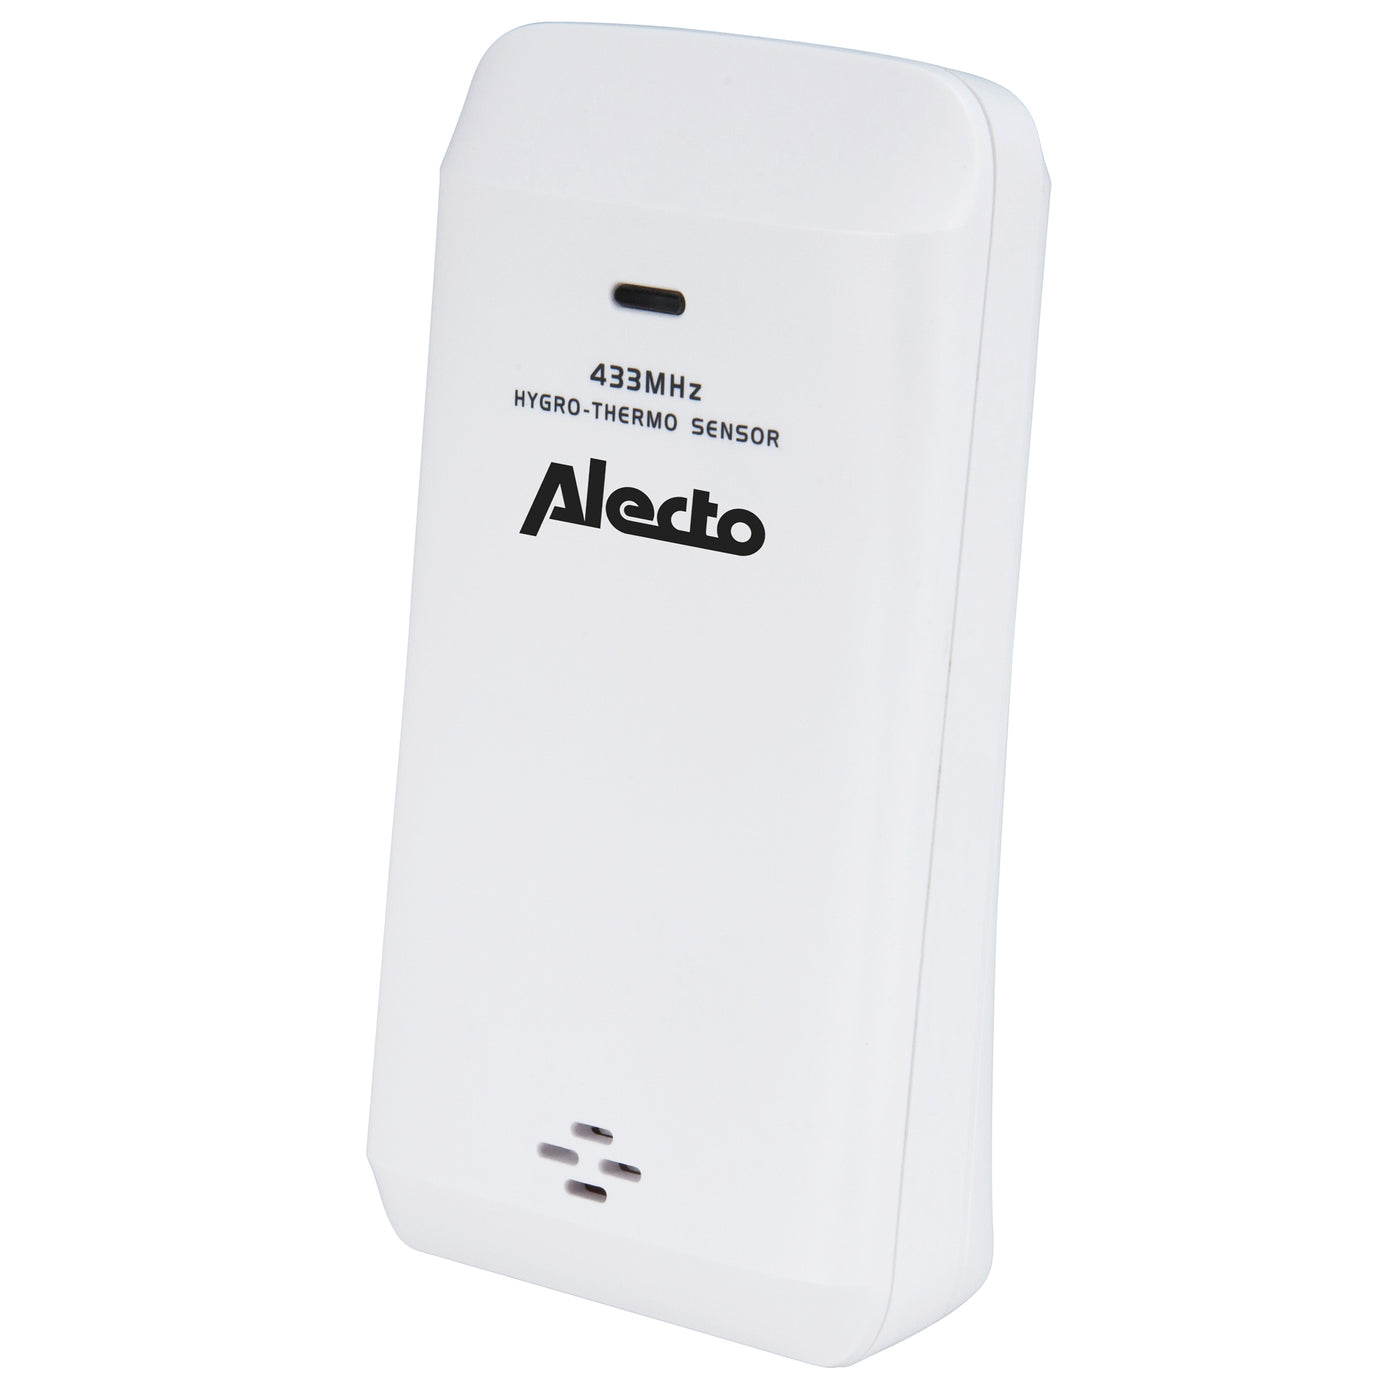 Alecto WS-2500 - Digitale wecker mit Wetterstation, schwarz/silber